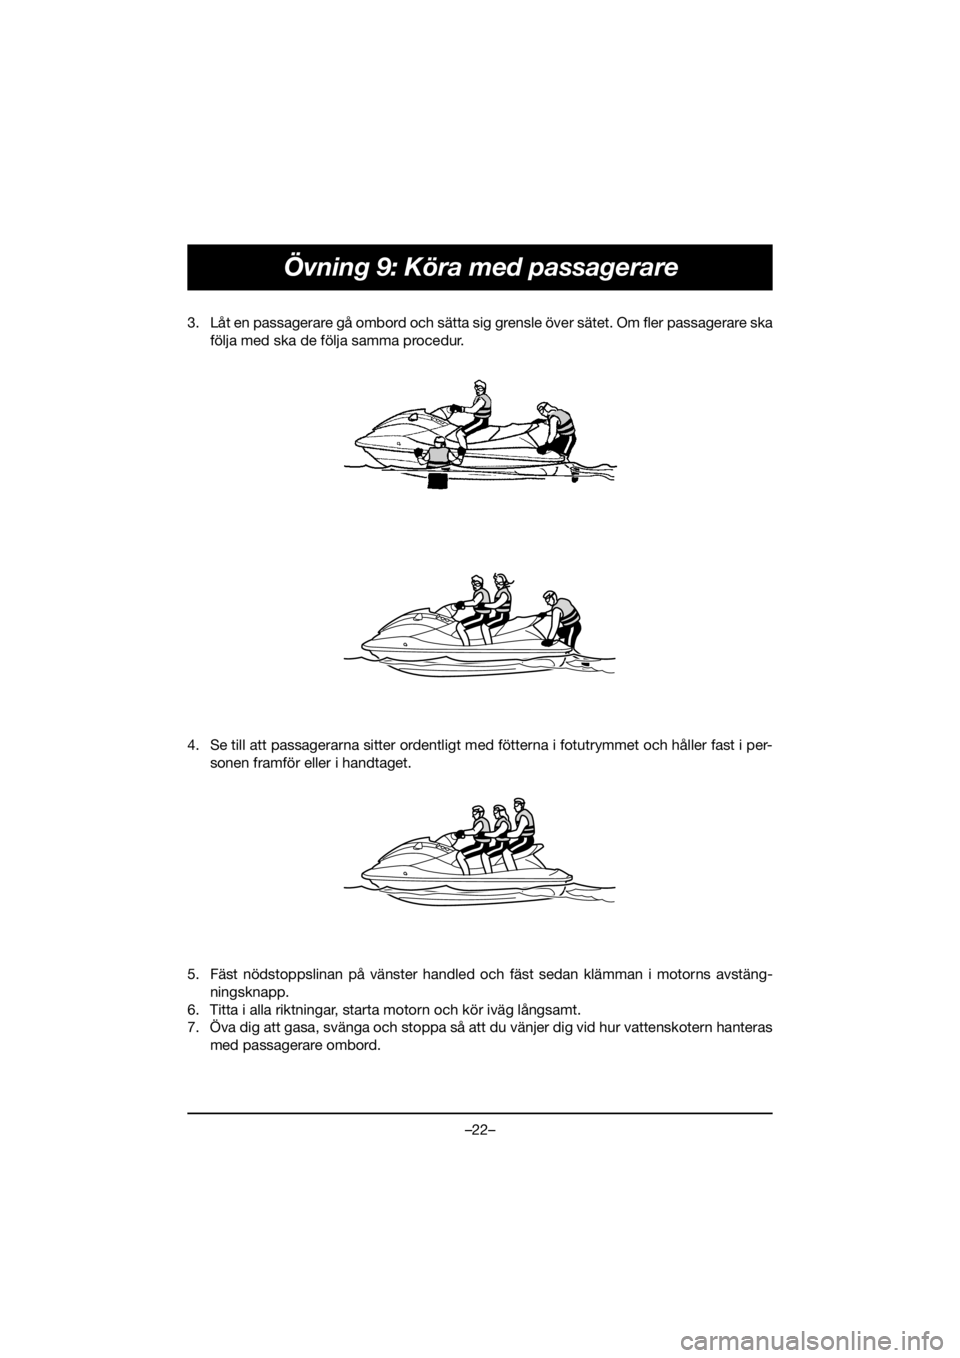 YAMAHA EX SPORT 2020  Notices Demploi (in French) –22–
Övning 9: Köra med passagerare
3. Låt en passagerare gå ombord och sätta sig grensle över sätet. Om fler passagerare ska
följa med ska de följa samma procedur. 
4. Se till att passag